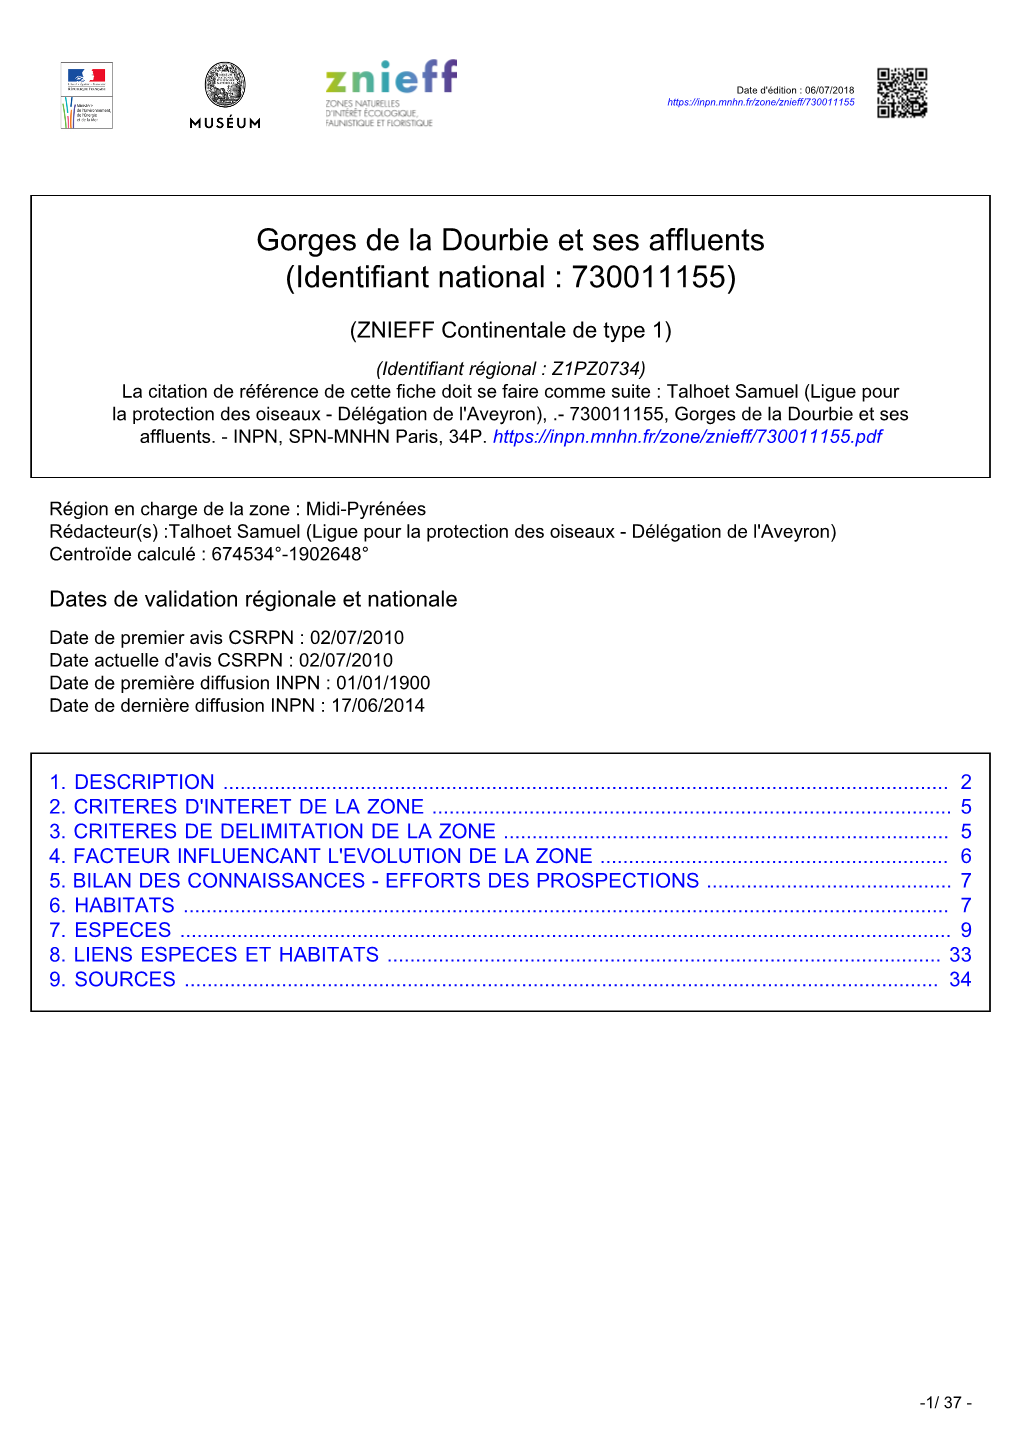 Gorges De La Dourbie Et Ses Affluents (Identifiant National : 730011155)